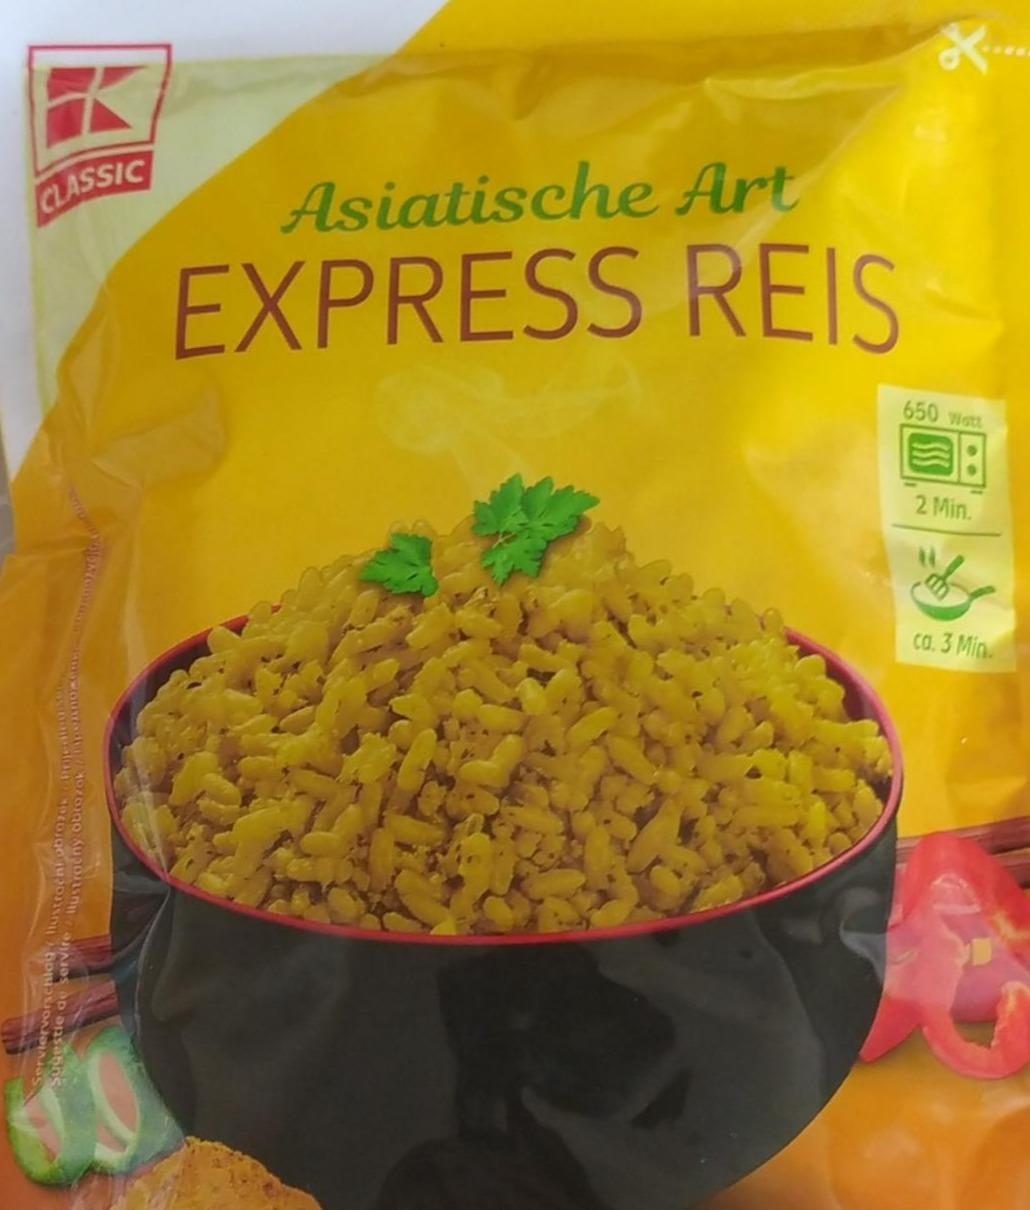 Fotografie - Asiatische Art Express Reis K-Classic